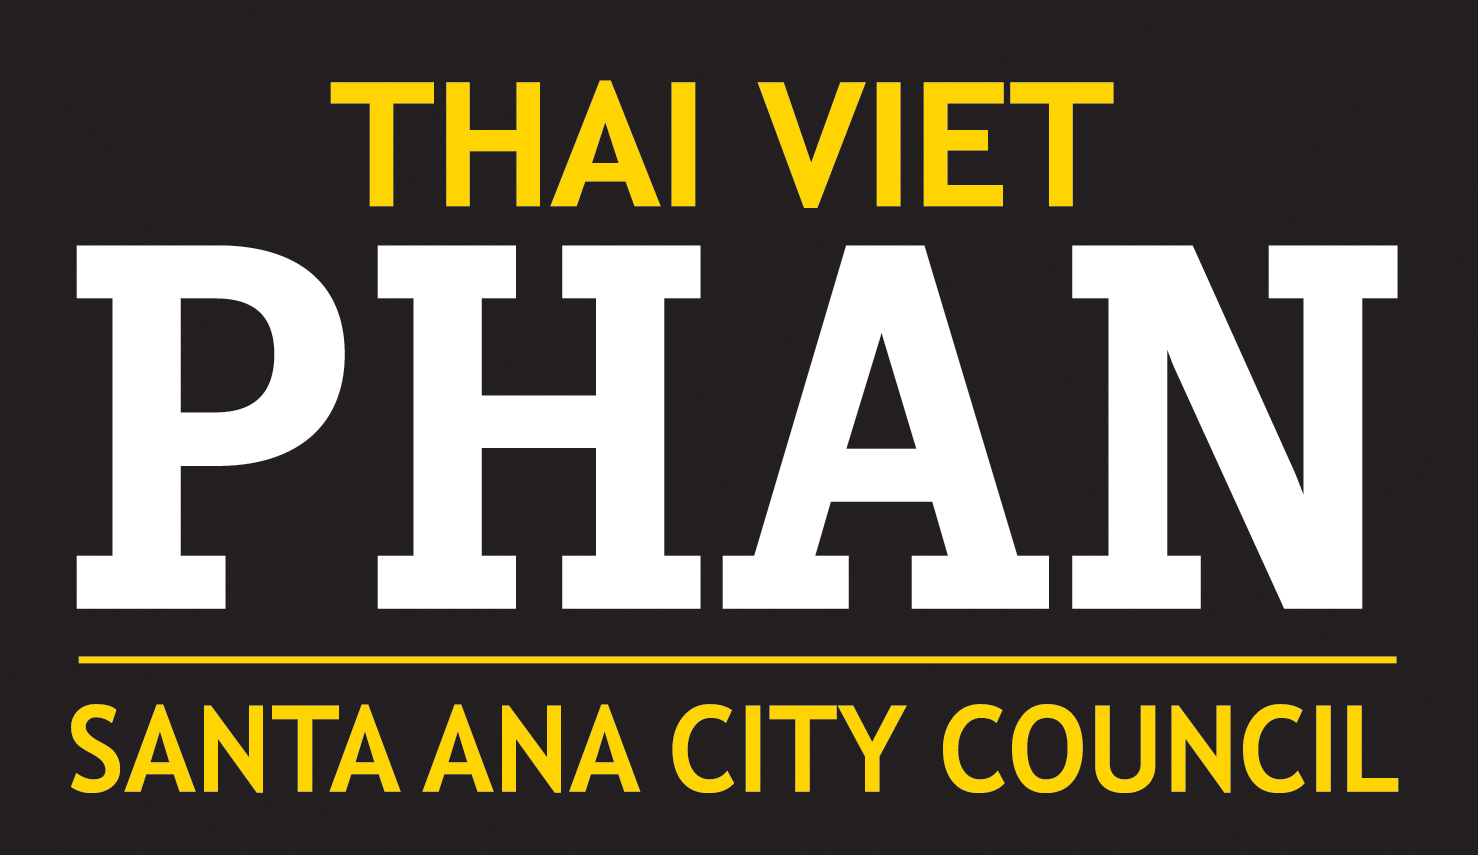 Thai Viet Phan for Santa Ana City Council